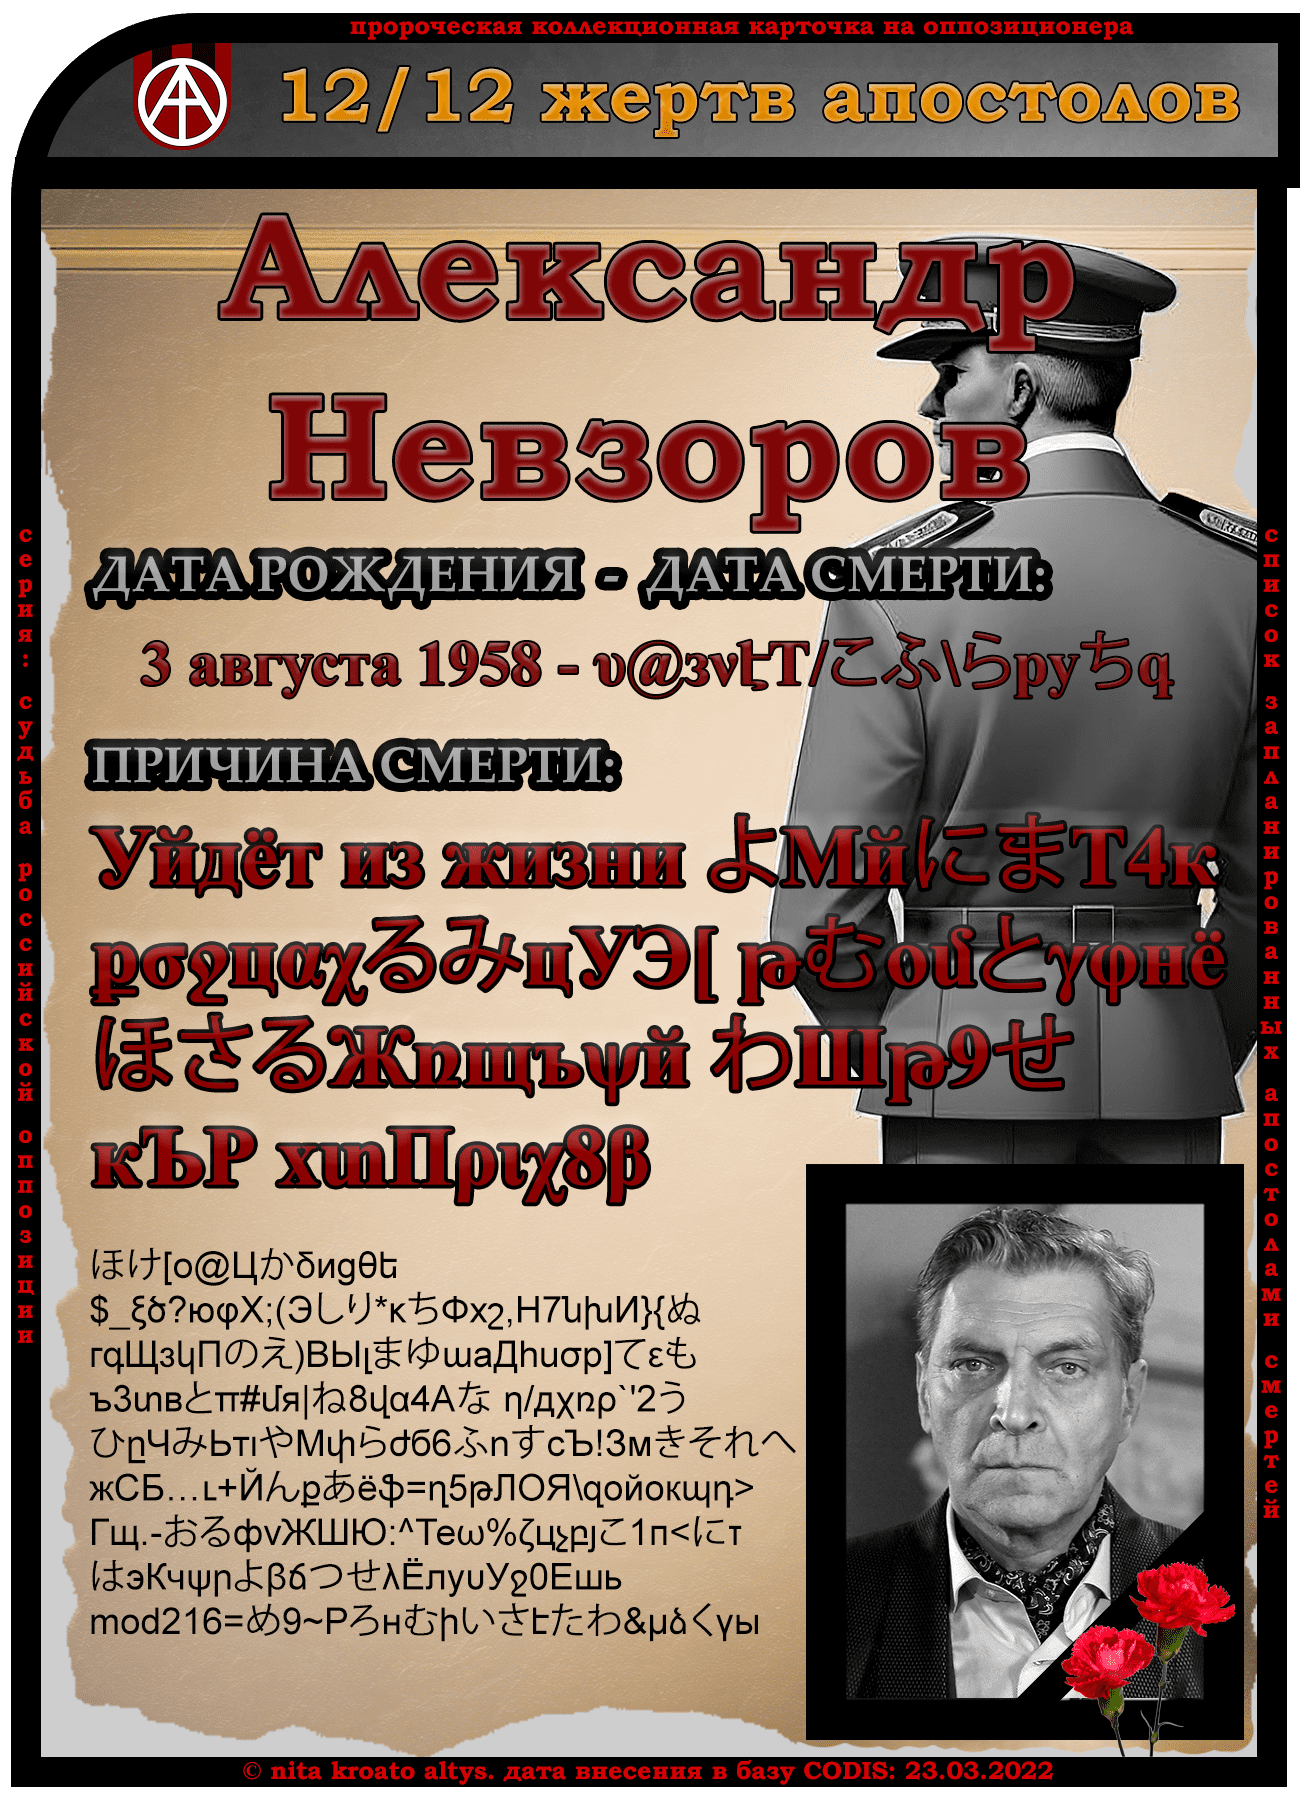 12. Александр Невзоров 3 августа 1958. Дата смерти и причина